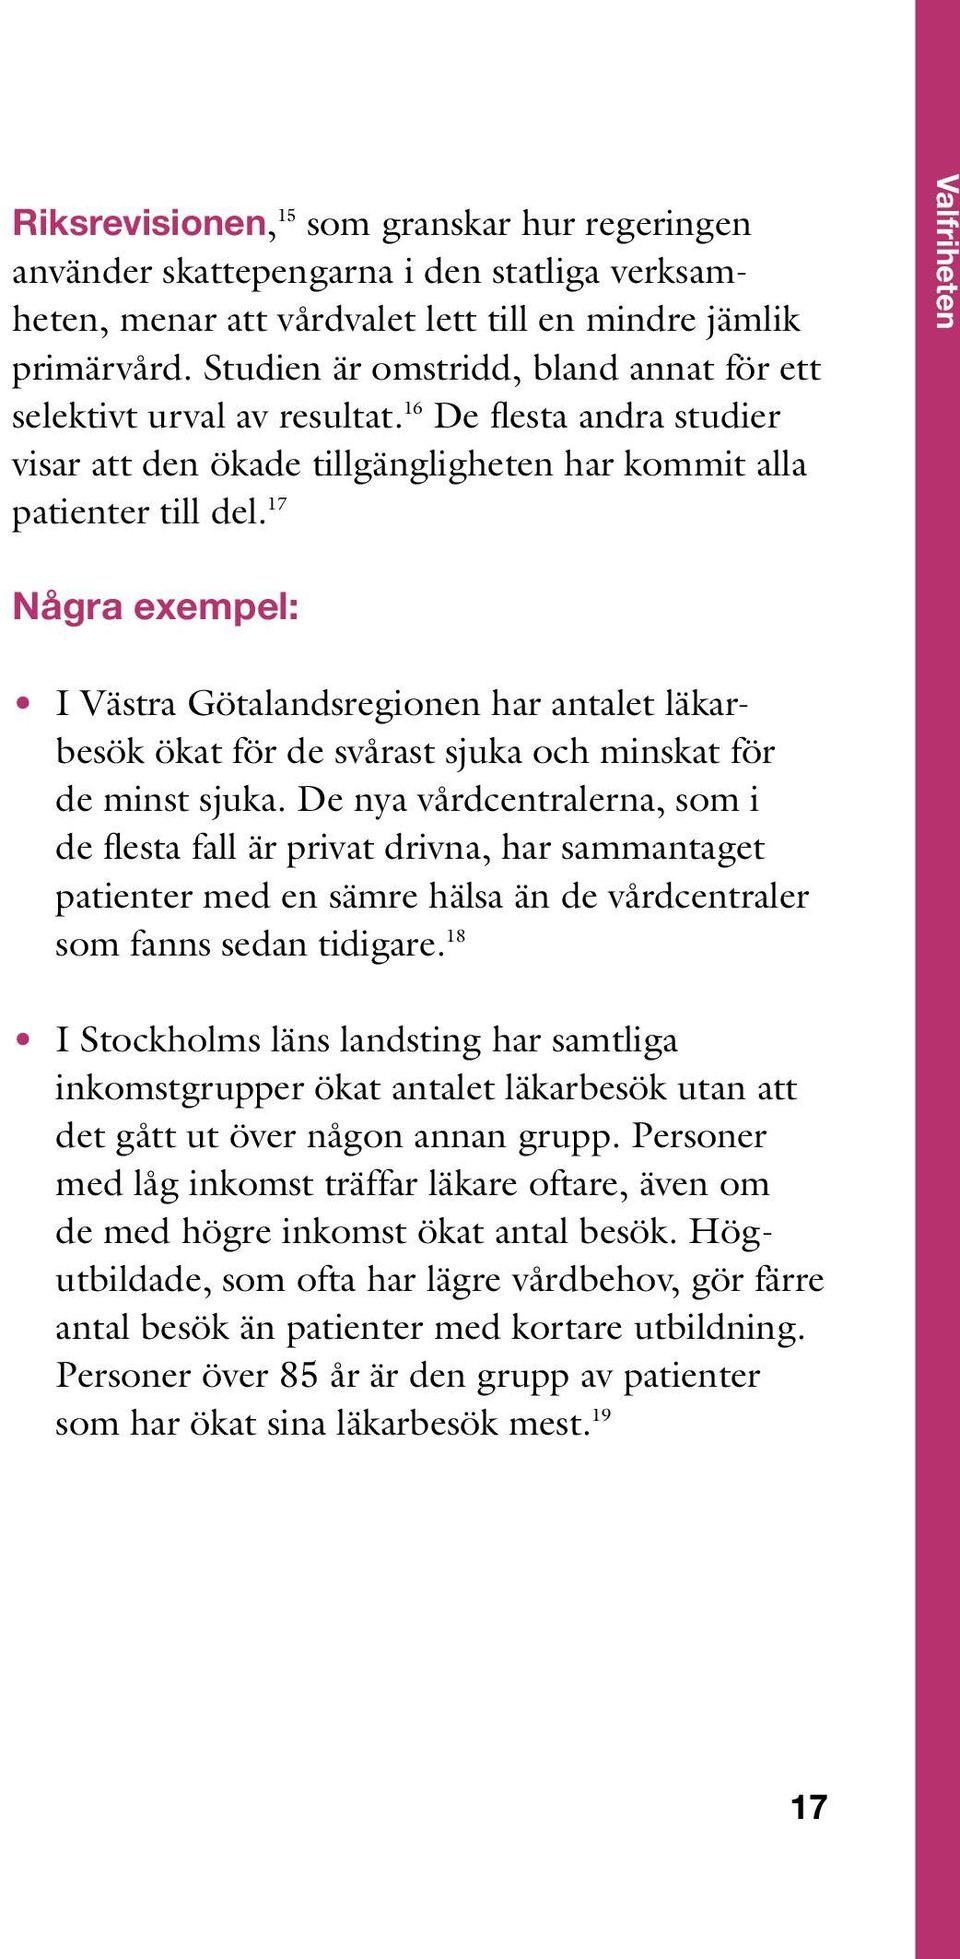 17 Valfriheten Några exempel: I Västra Götalandsregionen har antalet läkar - besök ökat för de svårast sjuka och minskat för de minst sjuka.